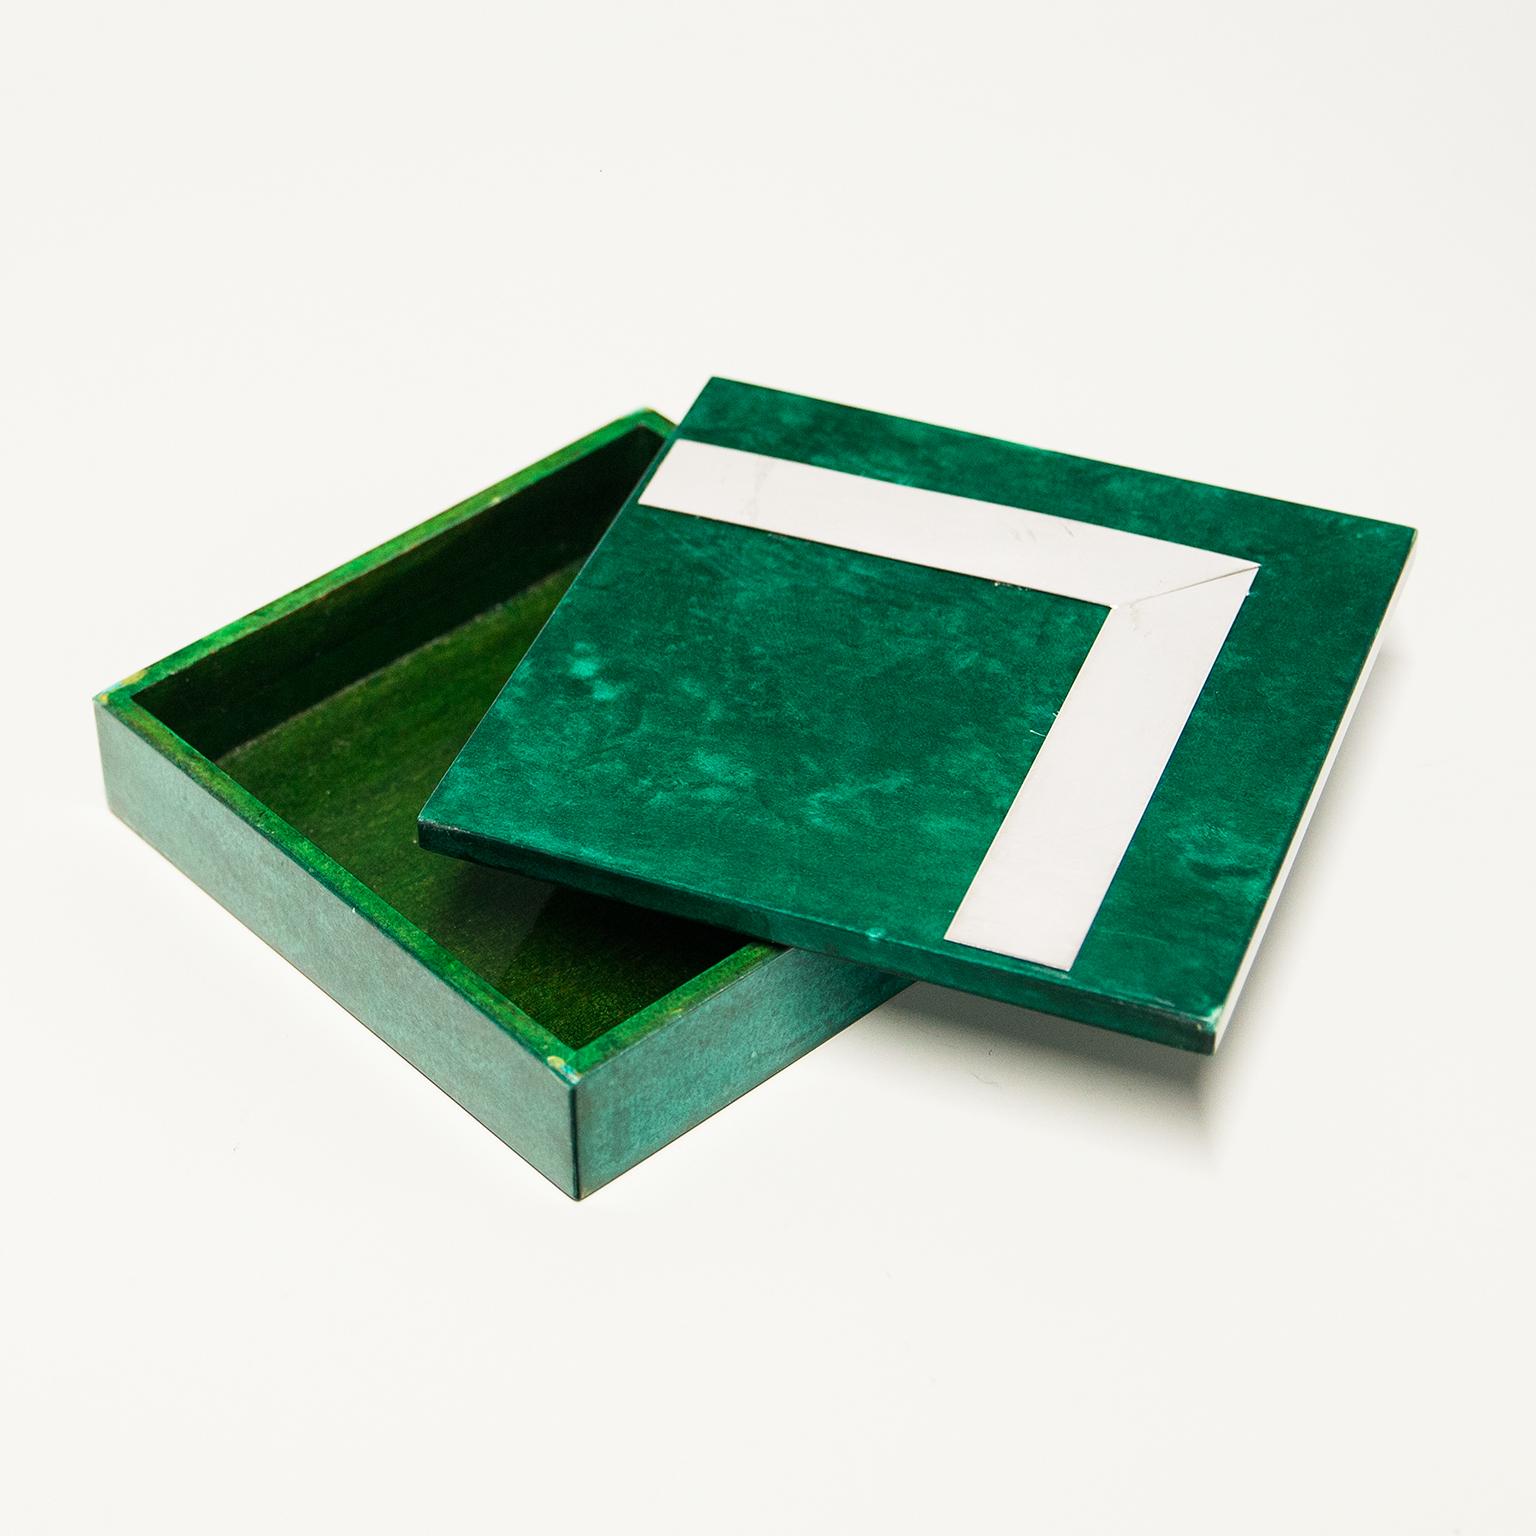 Aldo Tura Green Goatskin Chrome Box In Good Condition For Sale In Munich, DE